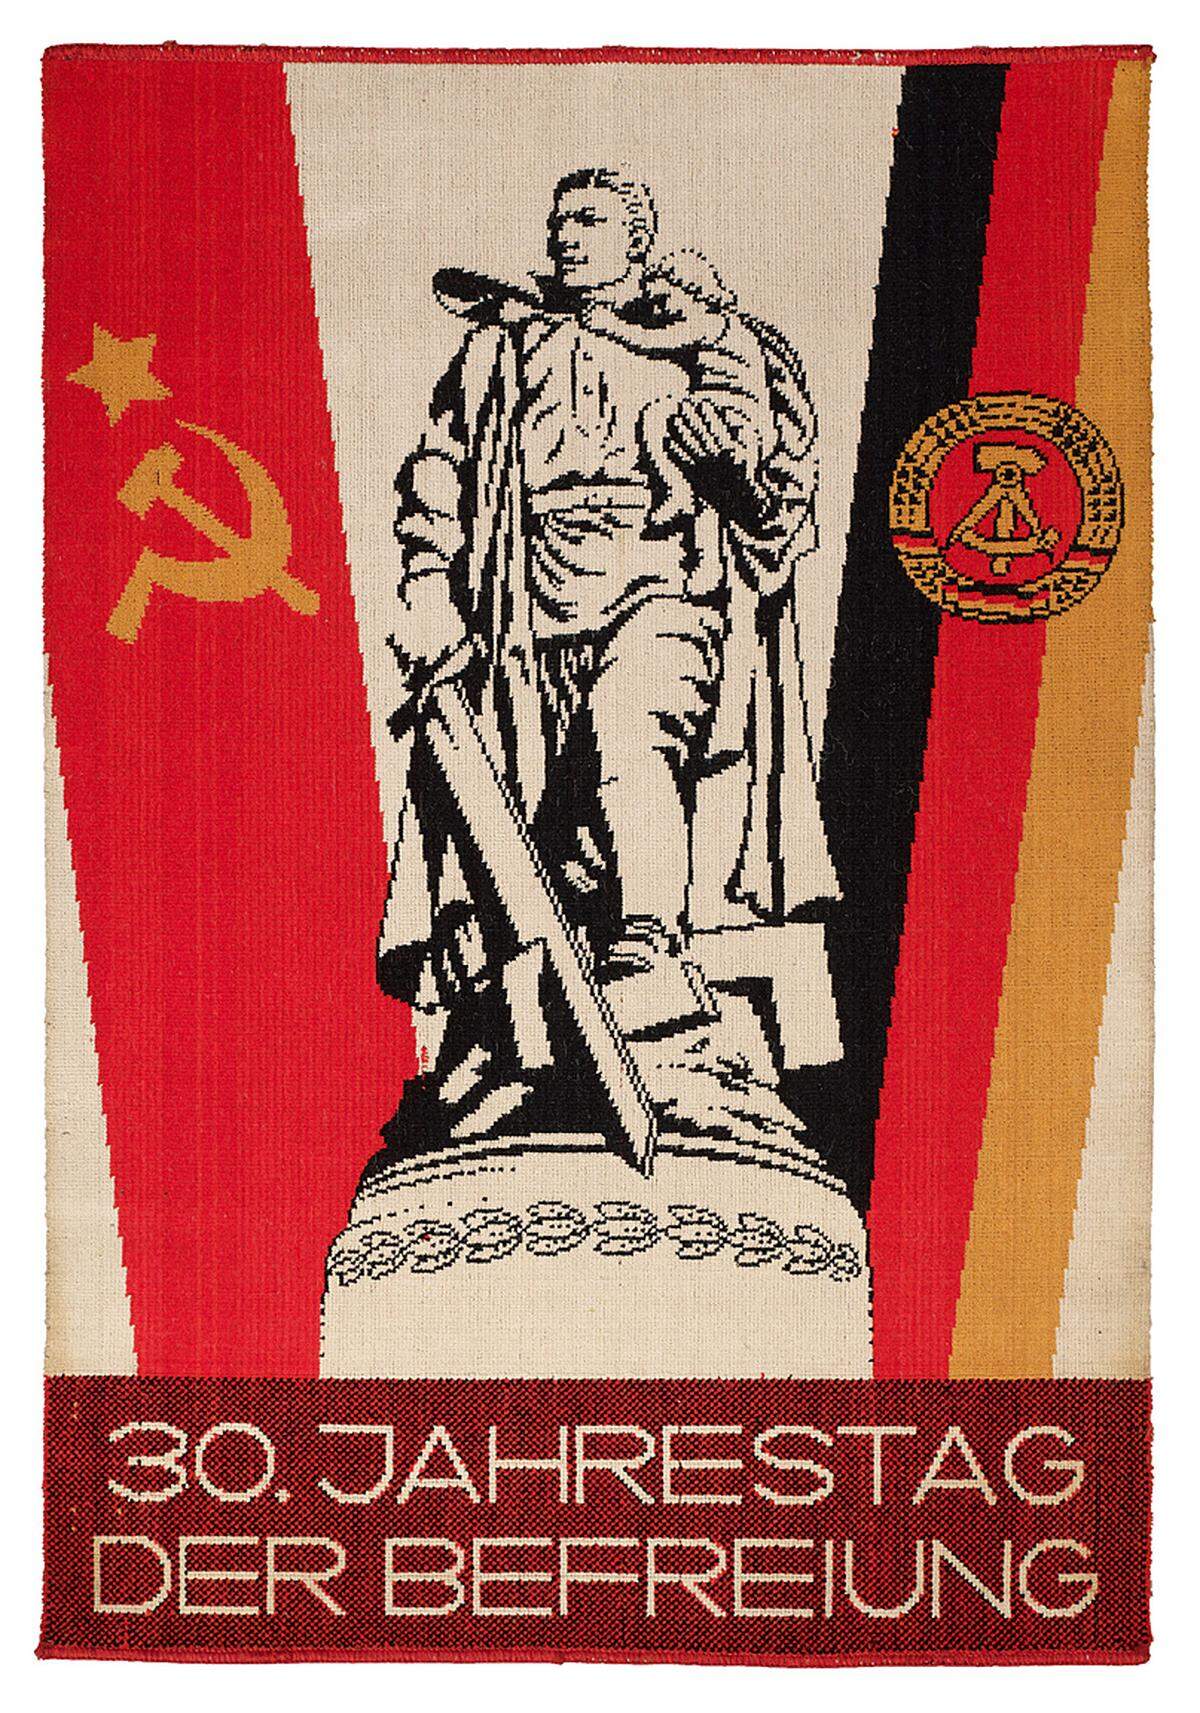 Oft wurde in den Motiven auch die Nähe zur Sowjetunion zum Ausdruck gebracht. 30. Jahrestag der Befreiung; 1,35 x 0,90 Meter; 1975